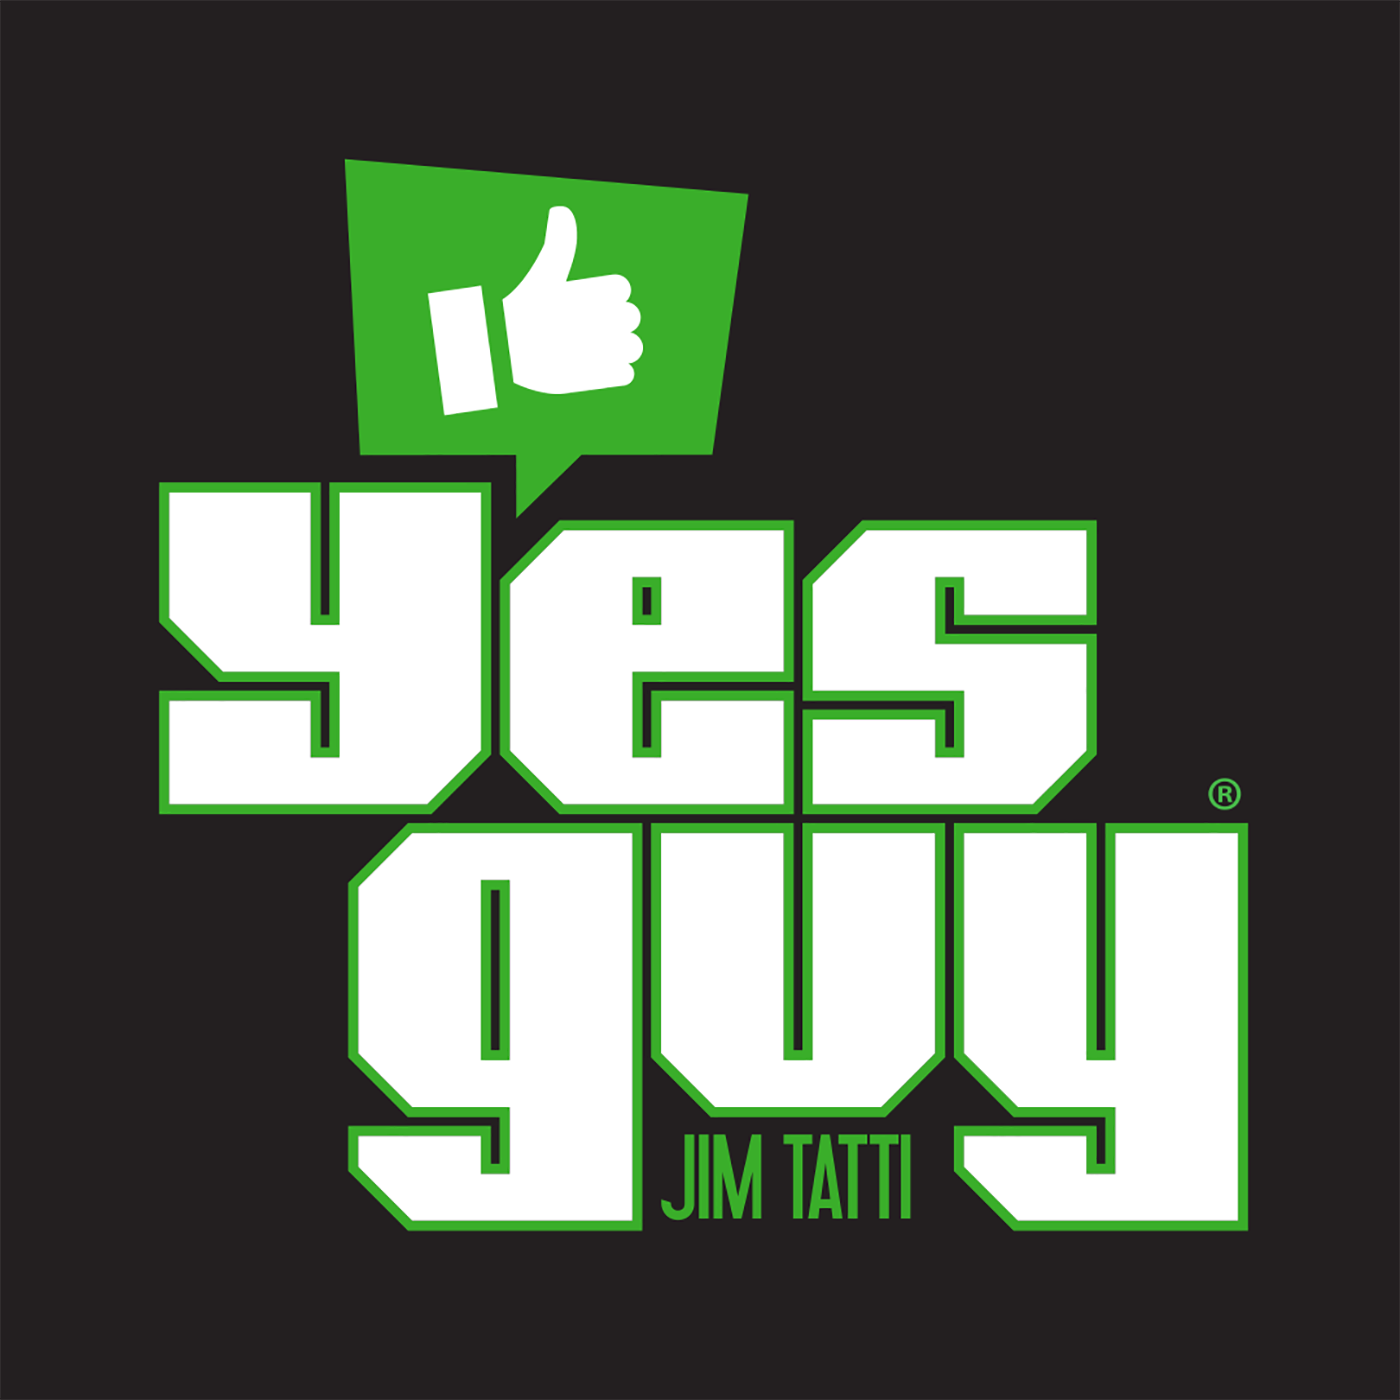 Yes Guy - February 29 - Episode 183